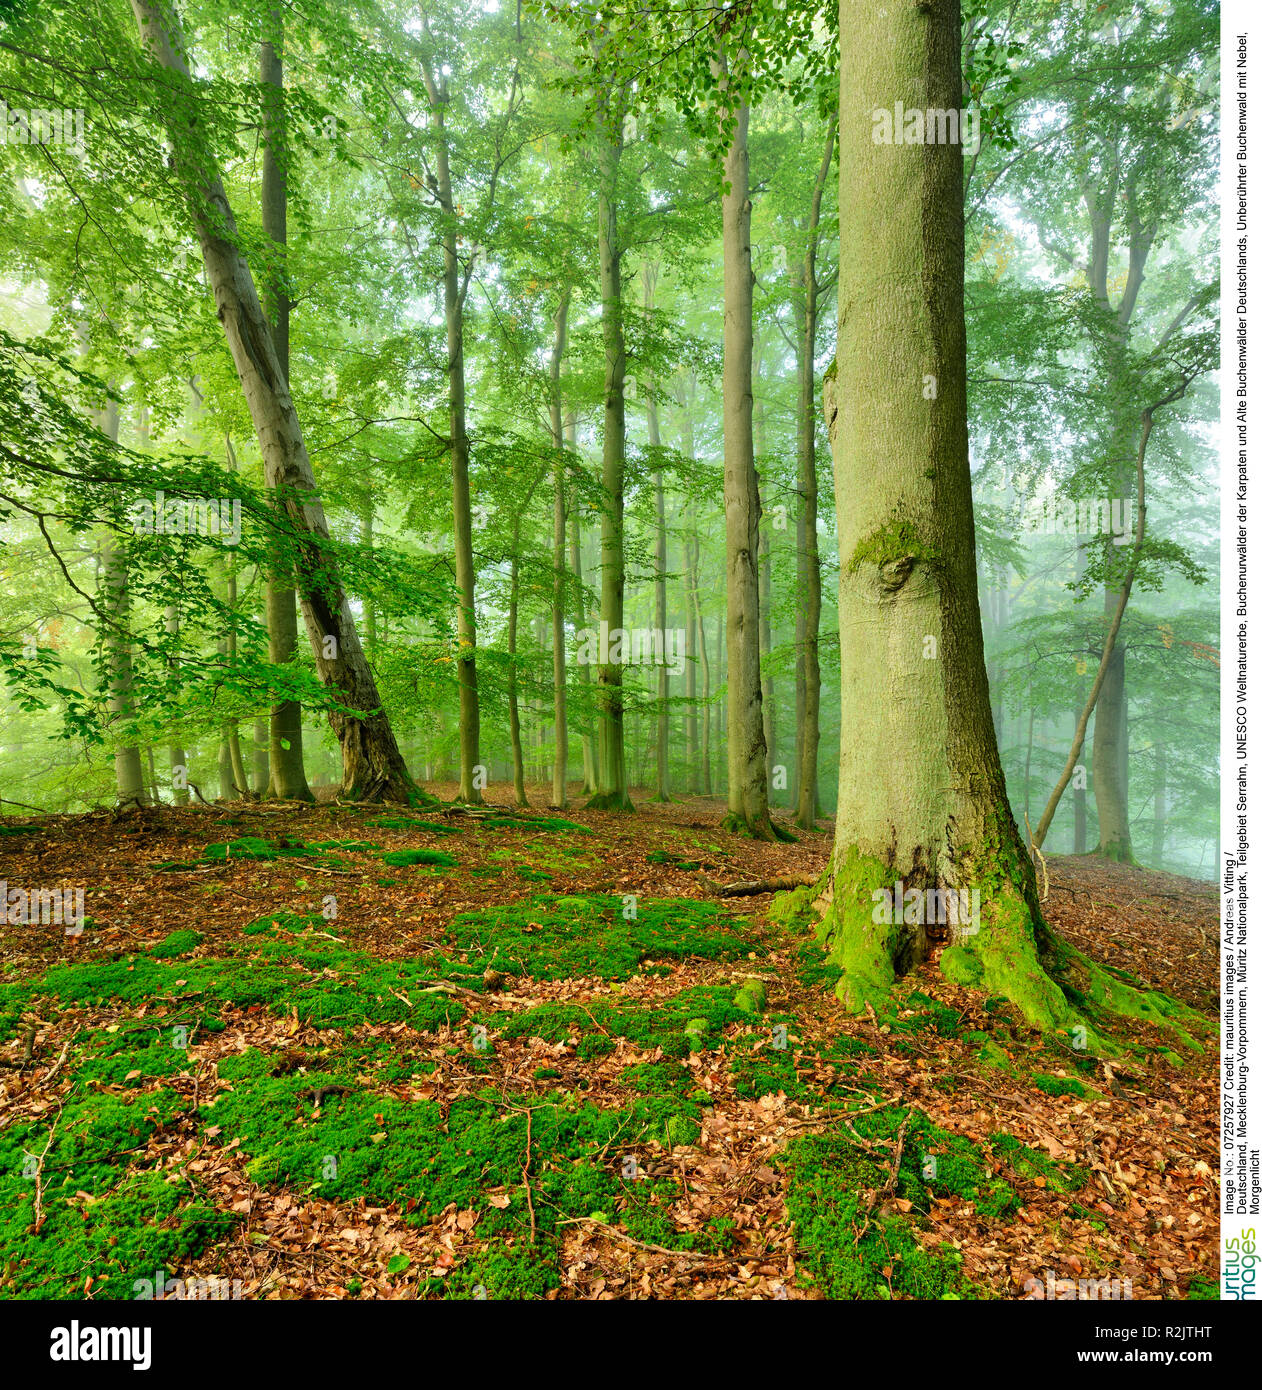 Germania, Meclenburgo-Pomerania Occidentale, Müritz National Park, sottozona Serrahn, Patrimonio Naturale UNESCO, boschi di faggio dei Carpazi e vecchie foreste di faggio in Germania, incontaminata foresta di faggio con la nebbia, la luce del mattino Foto Stock